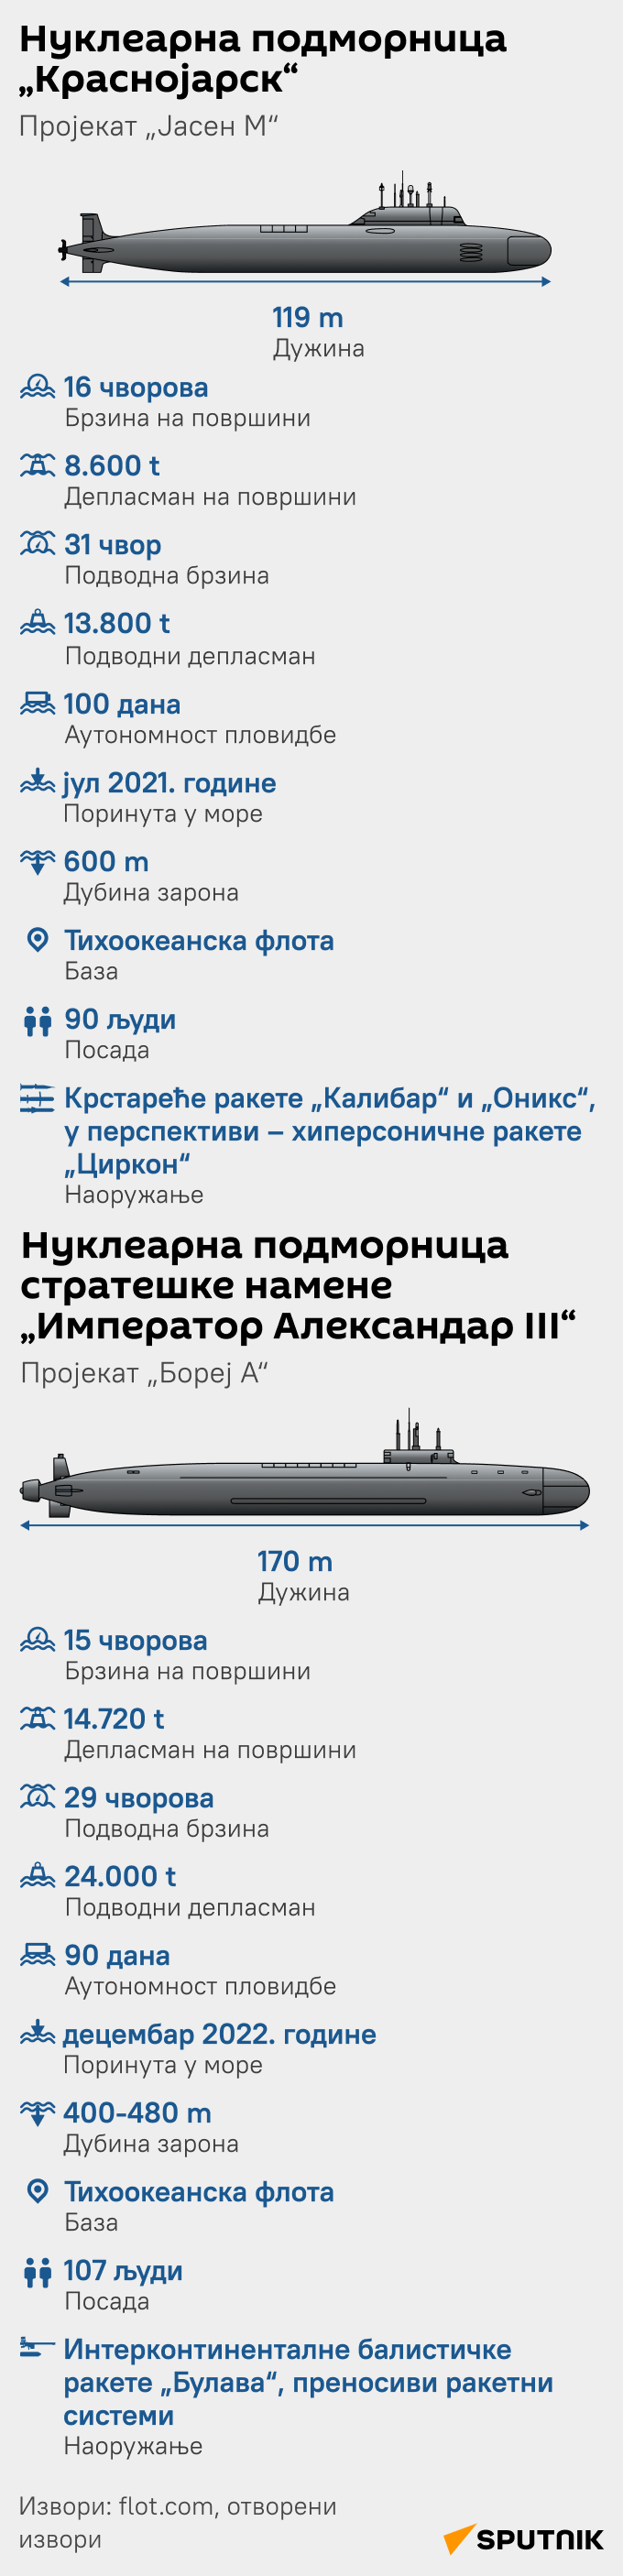 ИНФОГРАФИКА руске подморнице ЋИР моб - Sputnik Србија